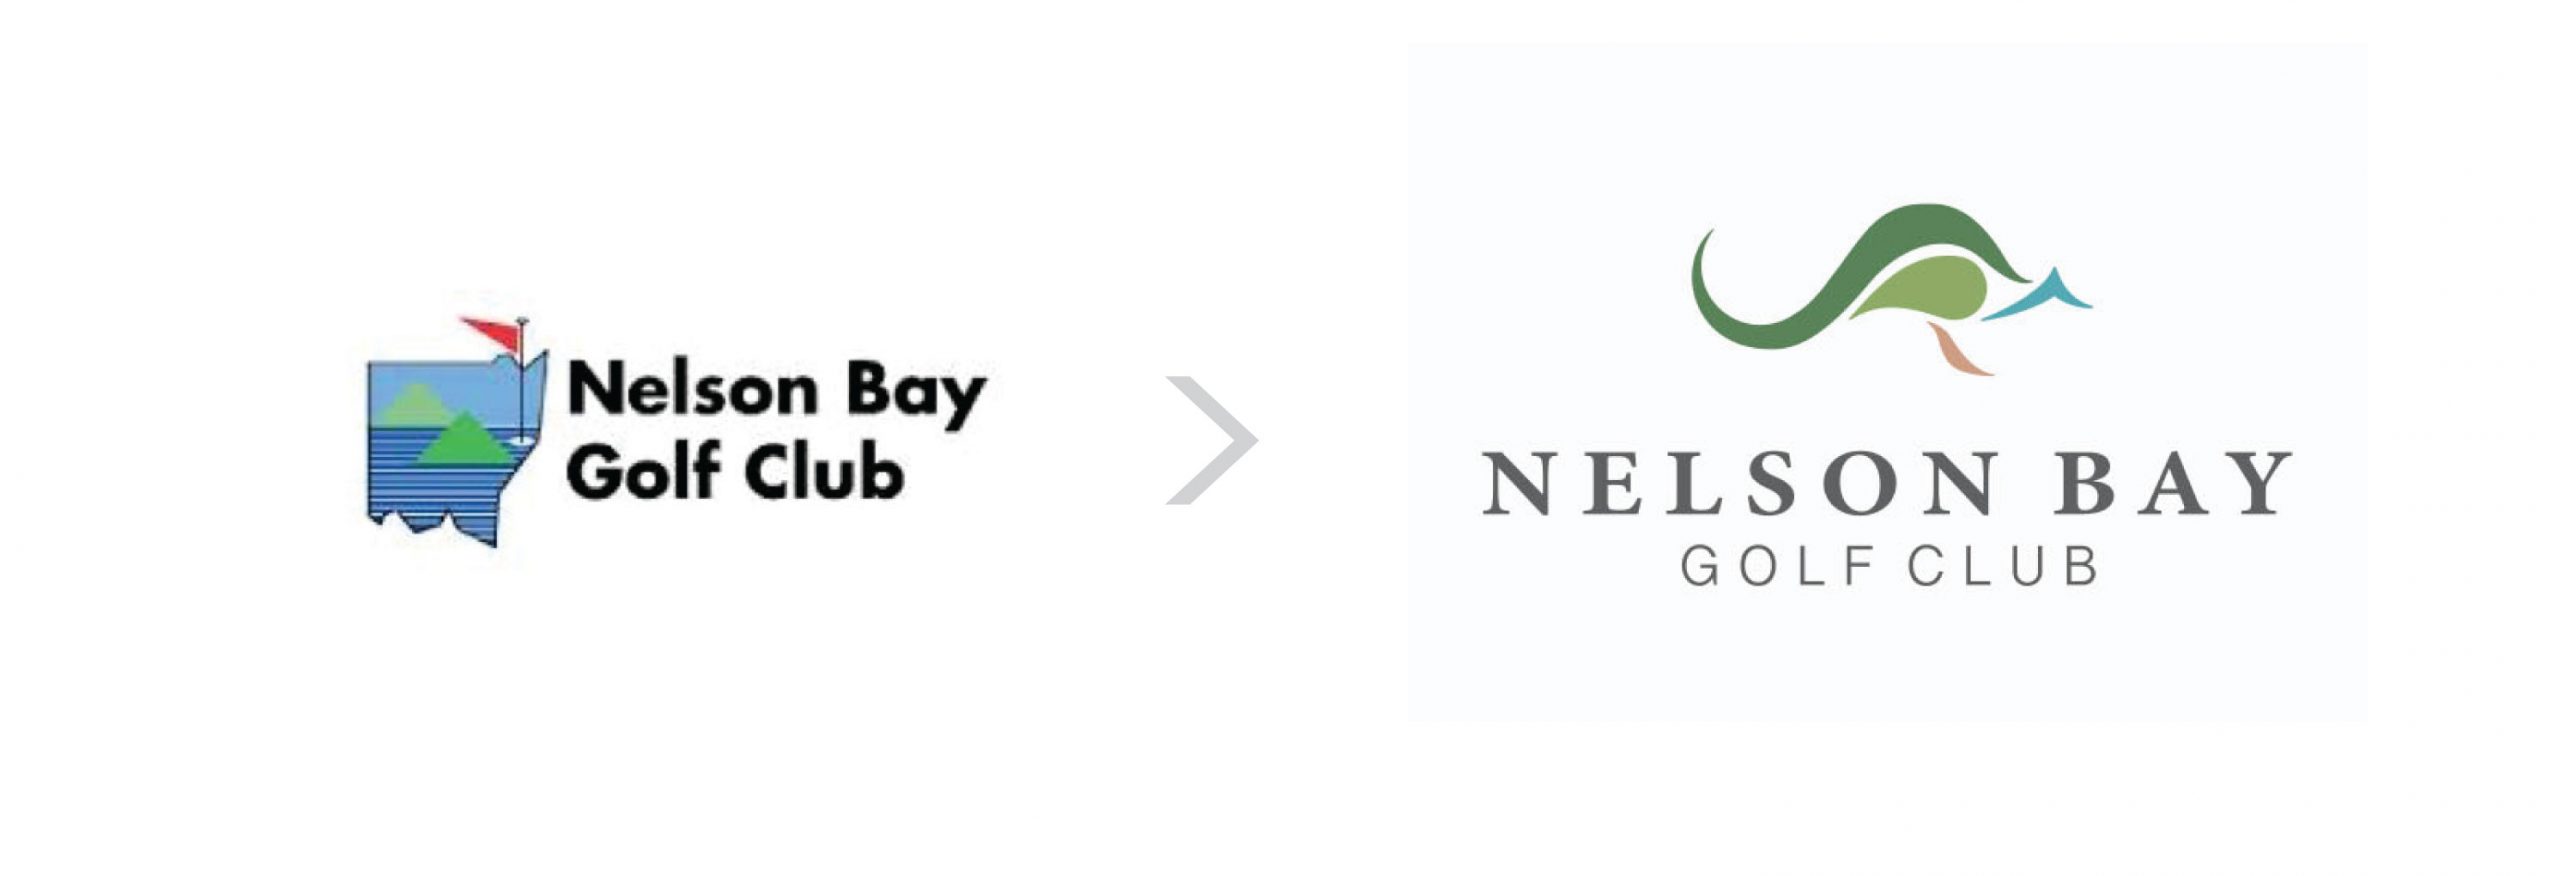 Logo Design - Nelson Bay Golf Club